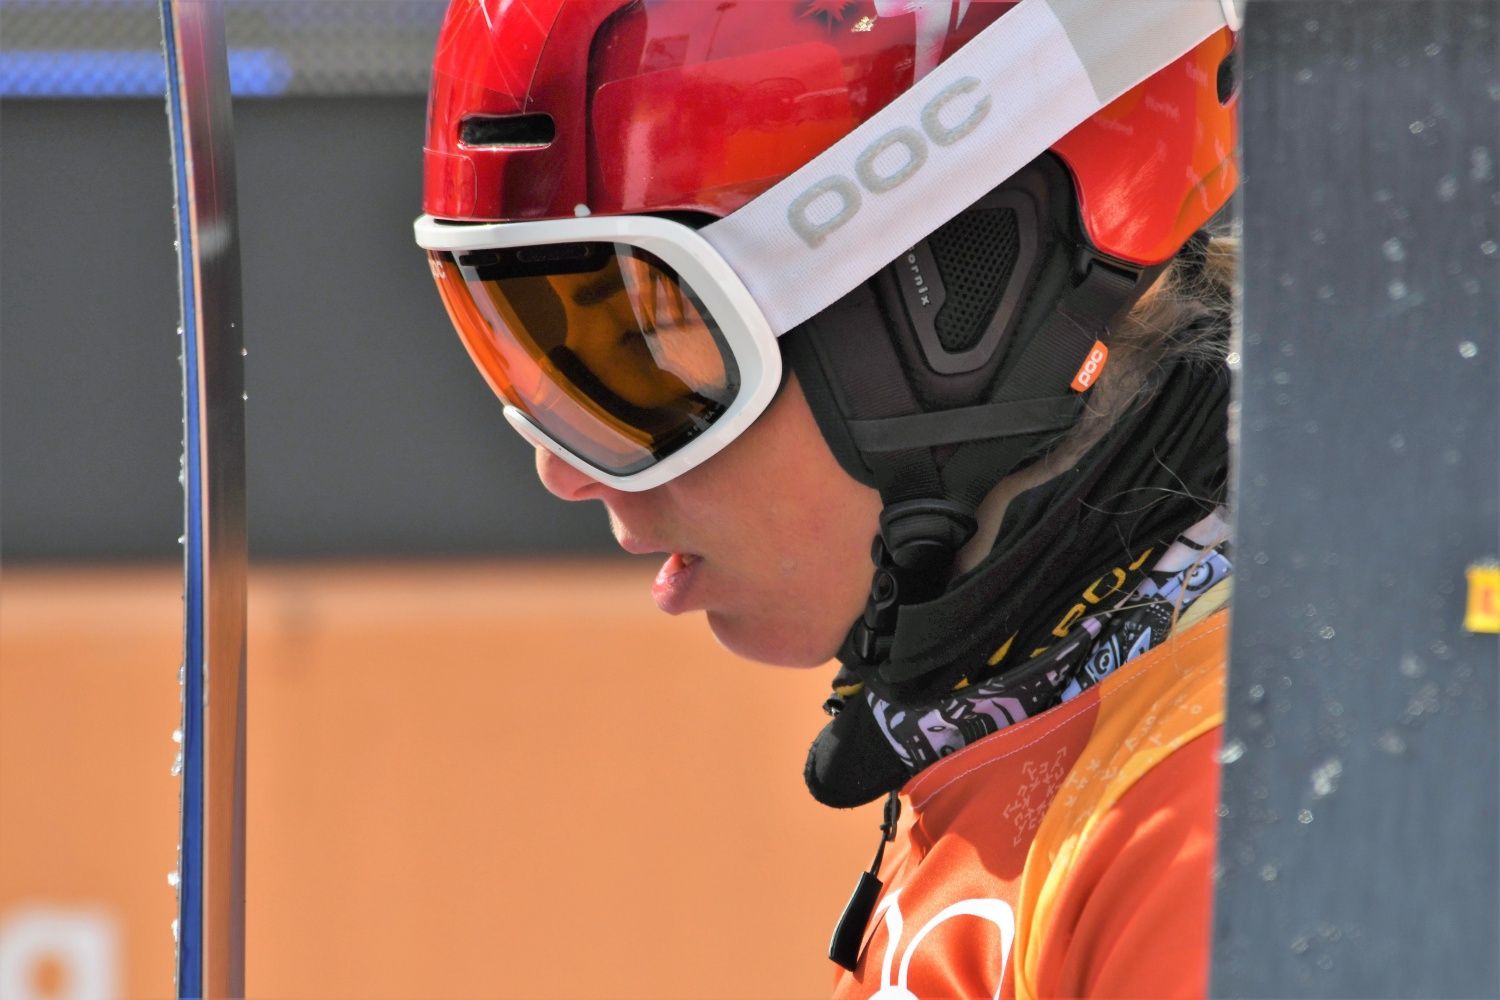 Vítězství Ester Ledecké v paralelním obřím slalomu na ZOH 2018